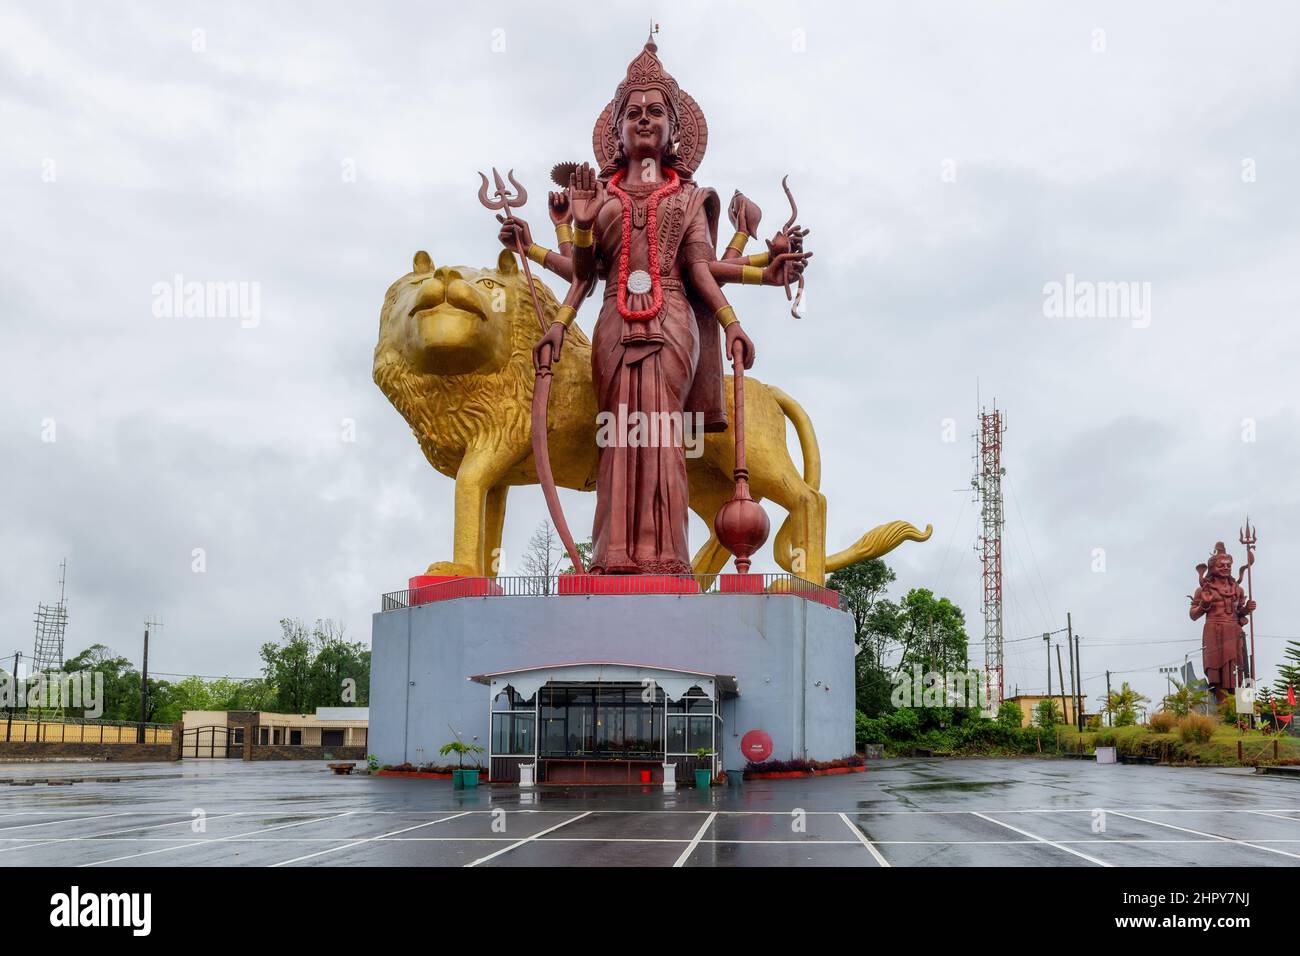 Giant sculpture Durga Mata and Lord Shiva at the Ganga Talao, Mauritius island Stock Photo